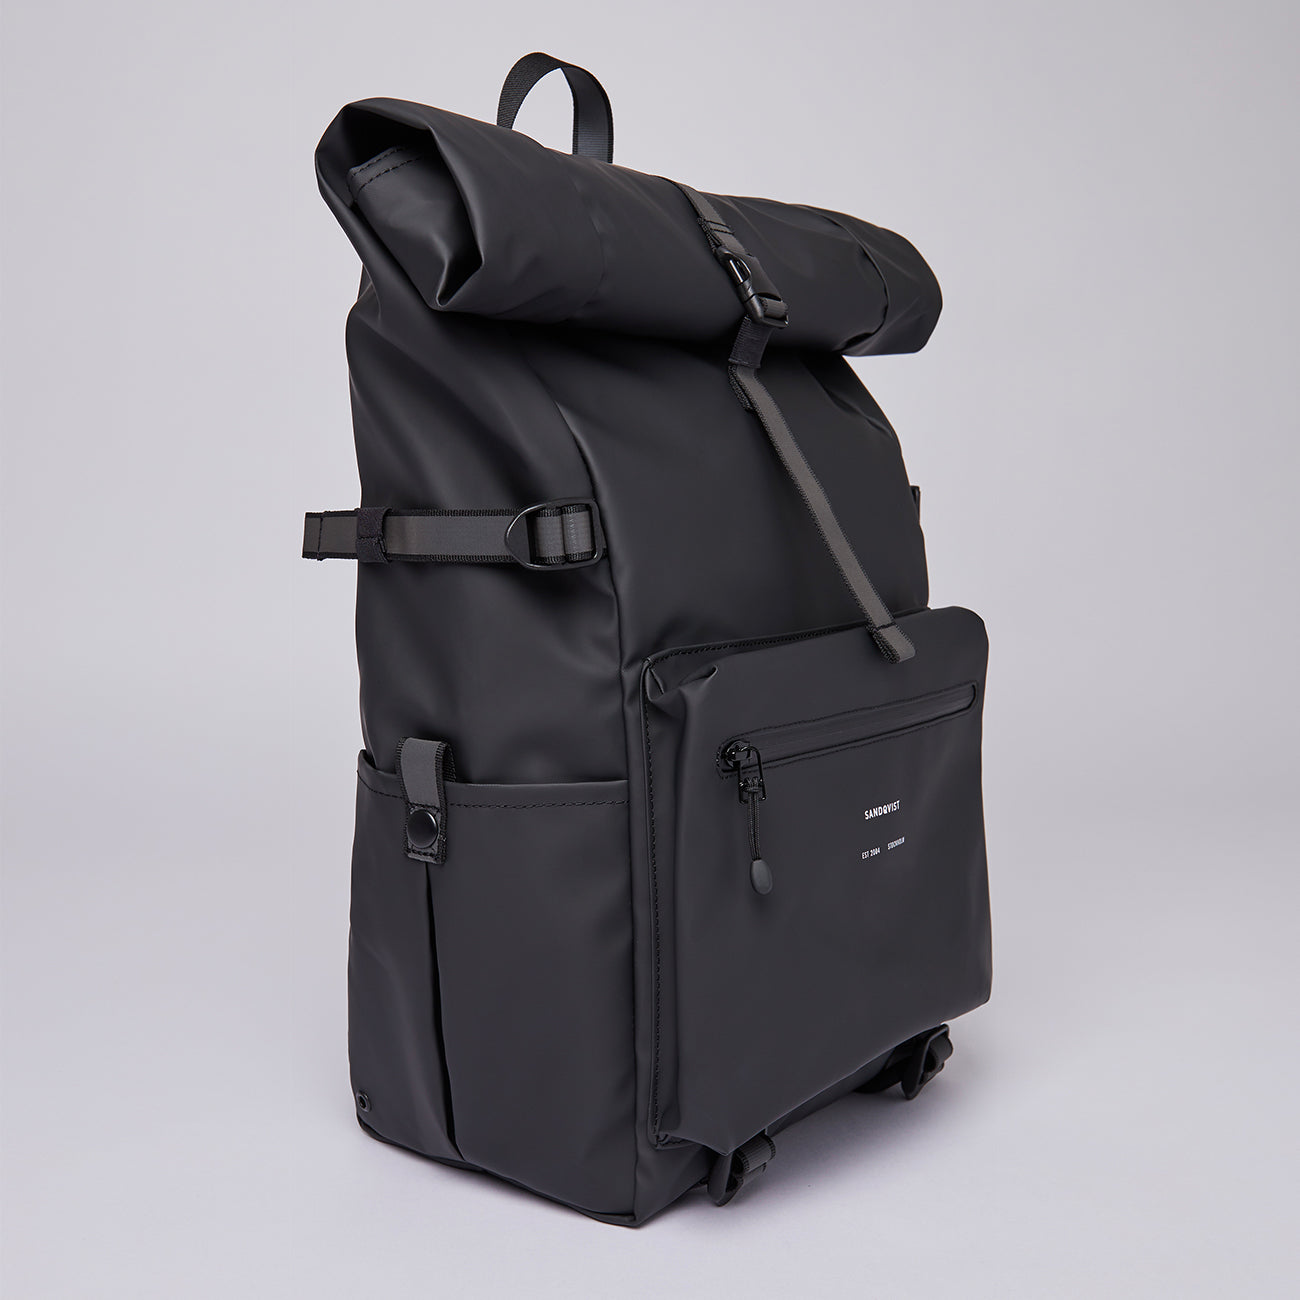 waterproof commute backpack black